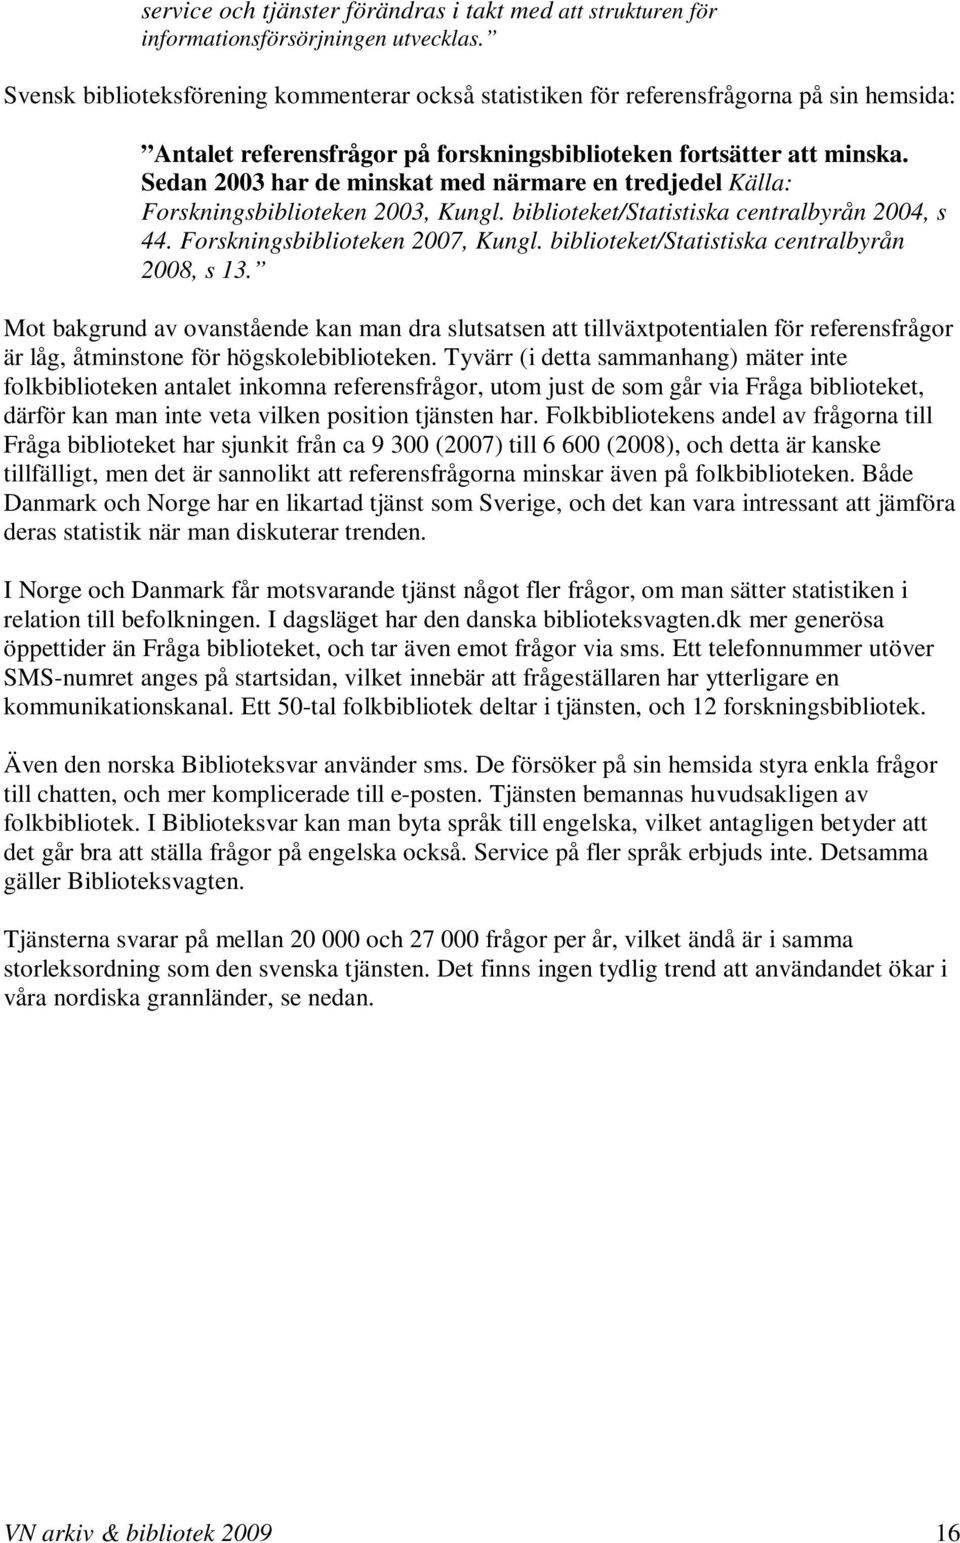 Sedan 2003 har de minskat med närmare en tredjedel Källa: Forskningsbiblioteken 2003, Kungl. biblioteket/statistiska centralbyrån 2004, s 44. Forskningsbiblioteken 2007, Kungl.